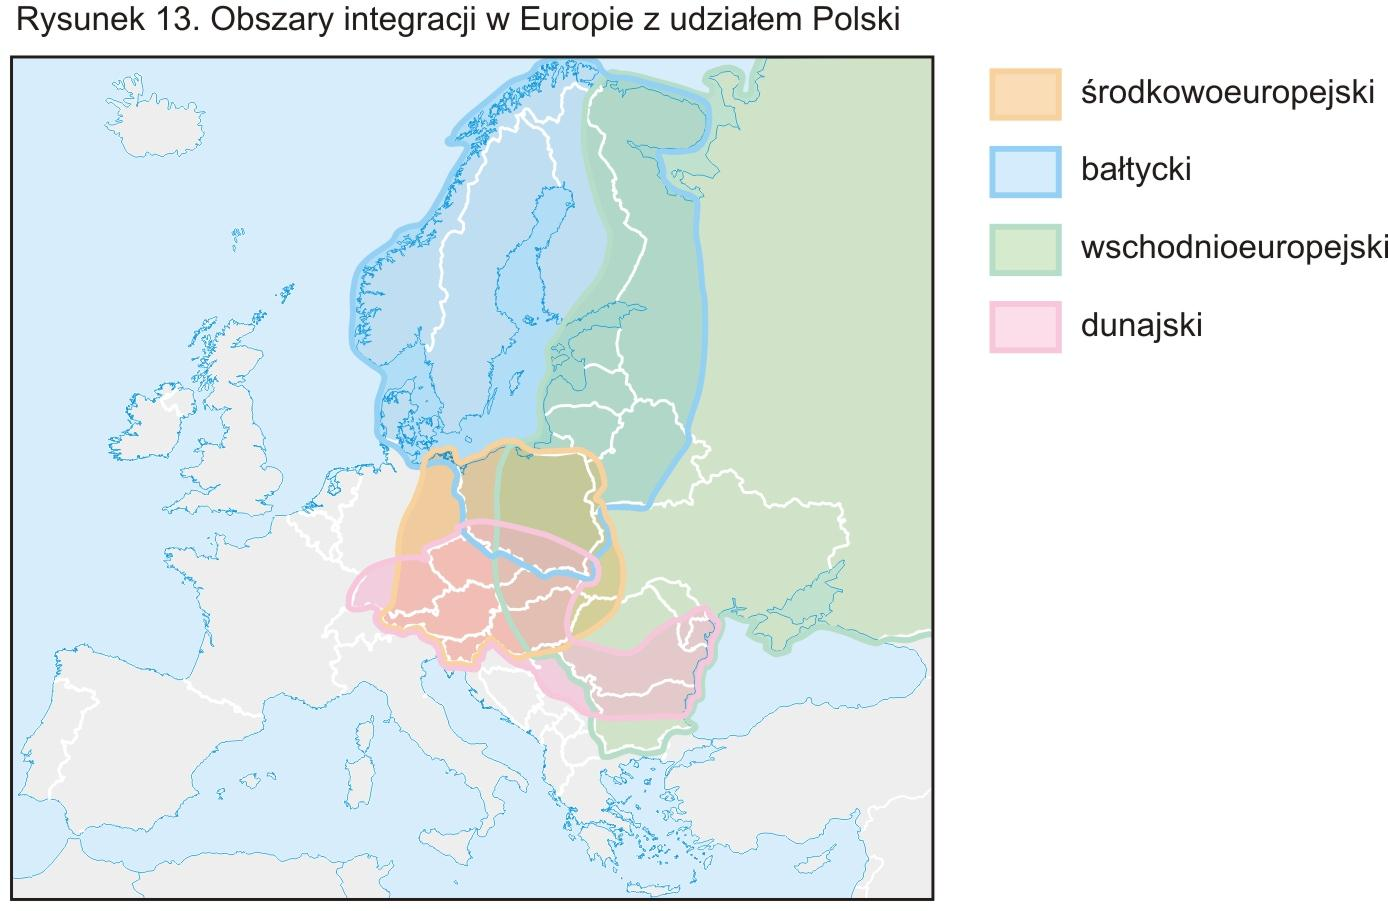 Sieci, dyfuzja i pola współpracy w Europie Najintensywniejsze powiązania Polski ukształtowały się wzdłuż zachodniej i południowozachodniej granicy Między metropoliami i miastami oraz regionami Ze